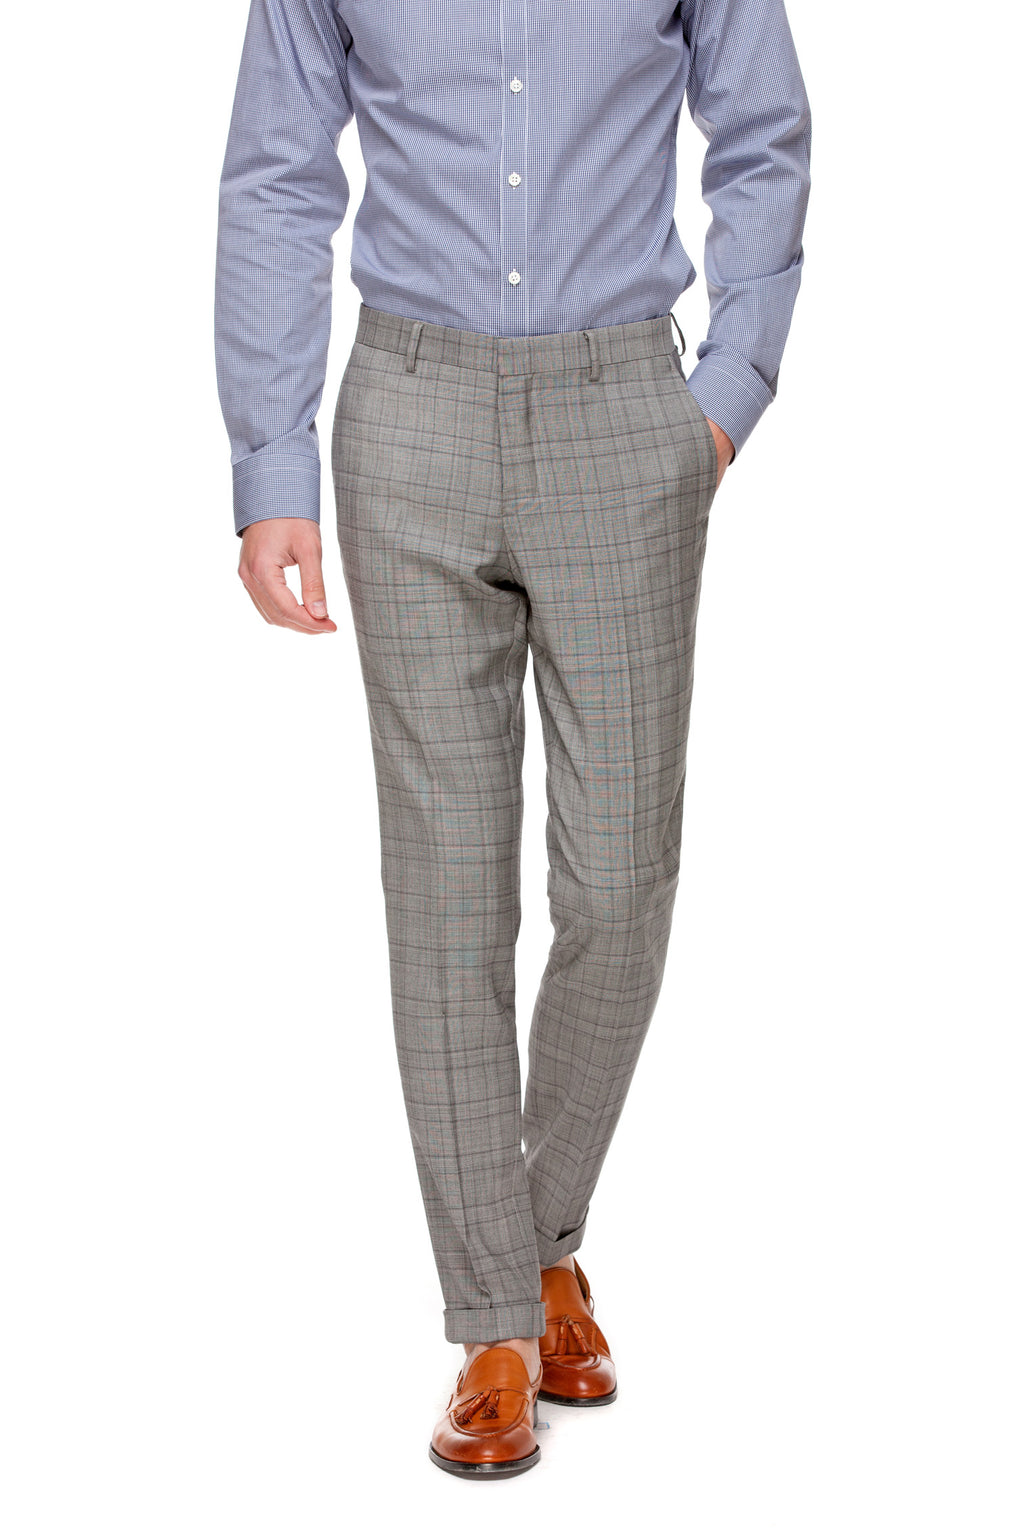 Custom Grey Pants ottotos